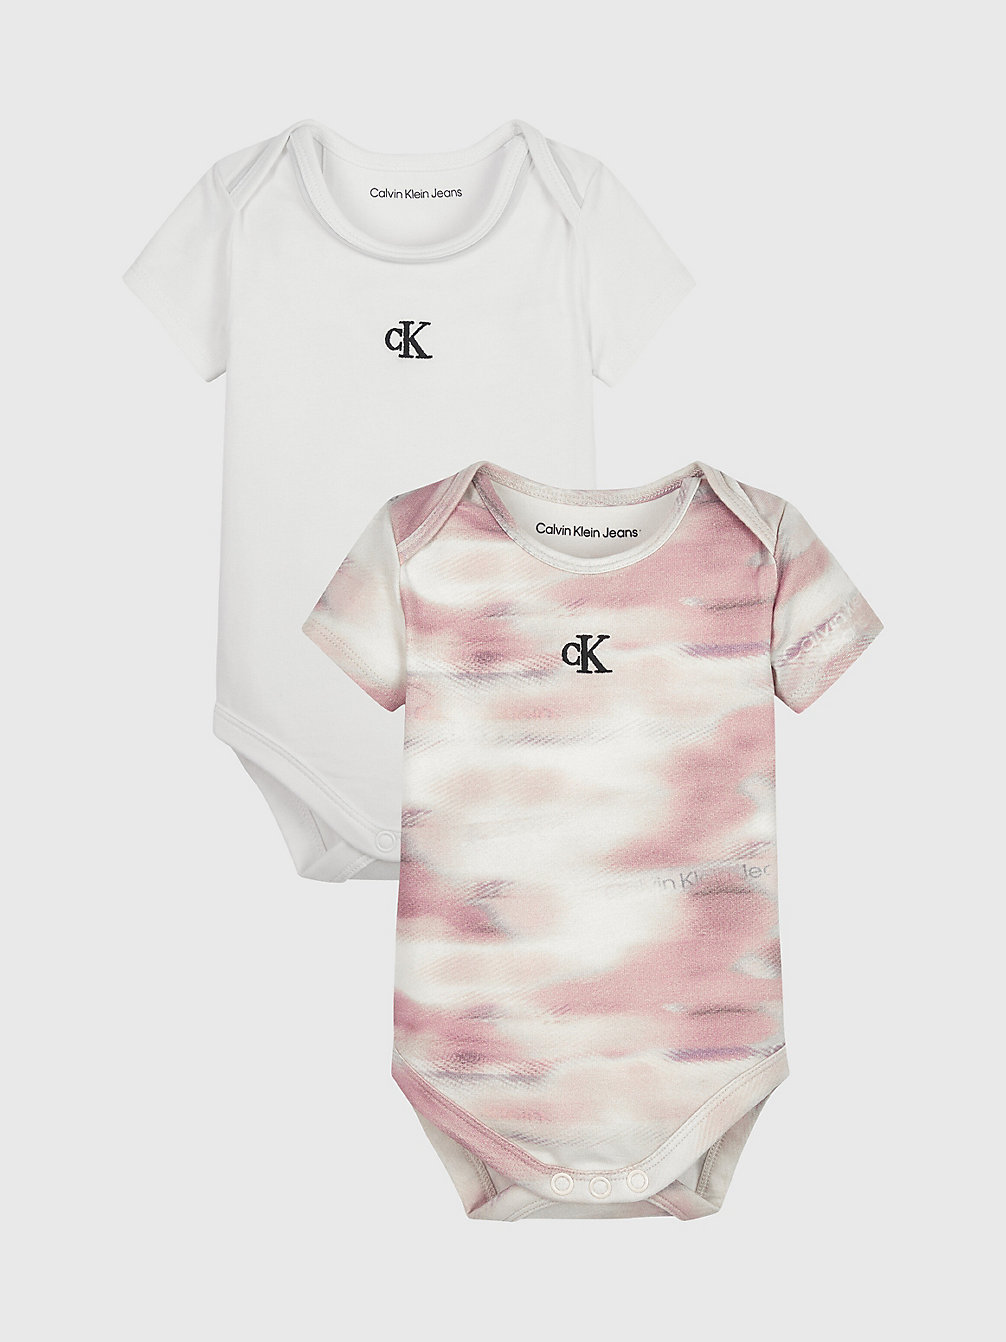 TIE DYE AOP Newborn 2-Pack Bodysuit Set undefined newborn Calvin Klein